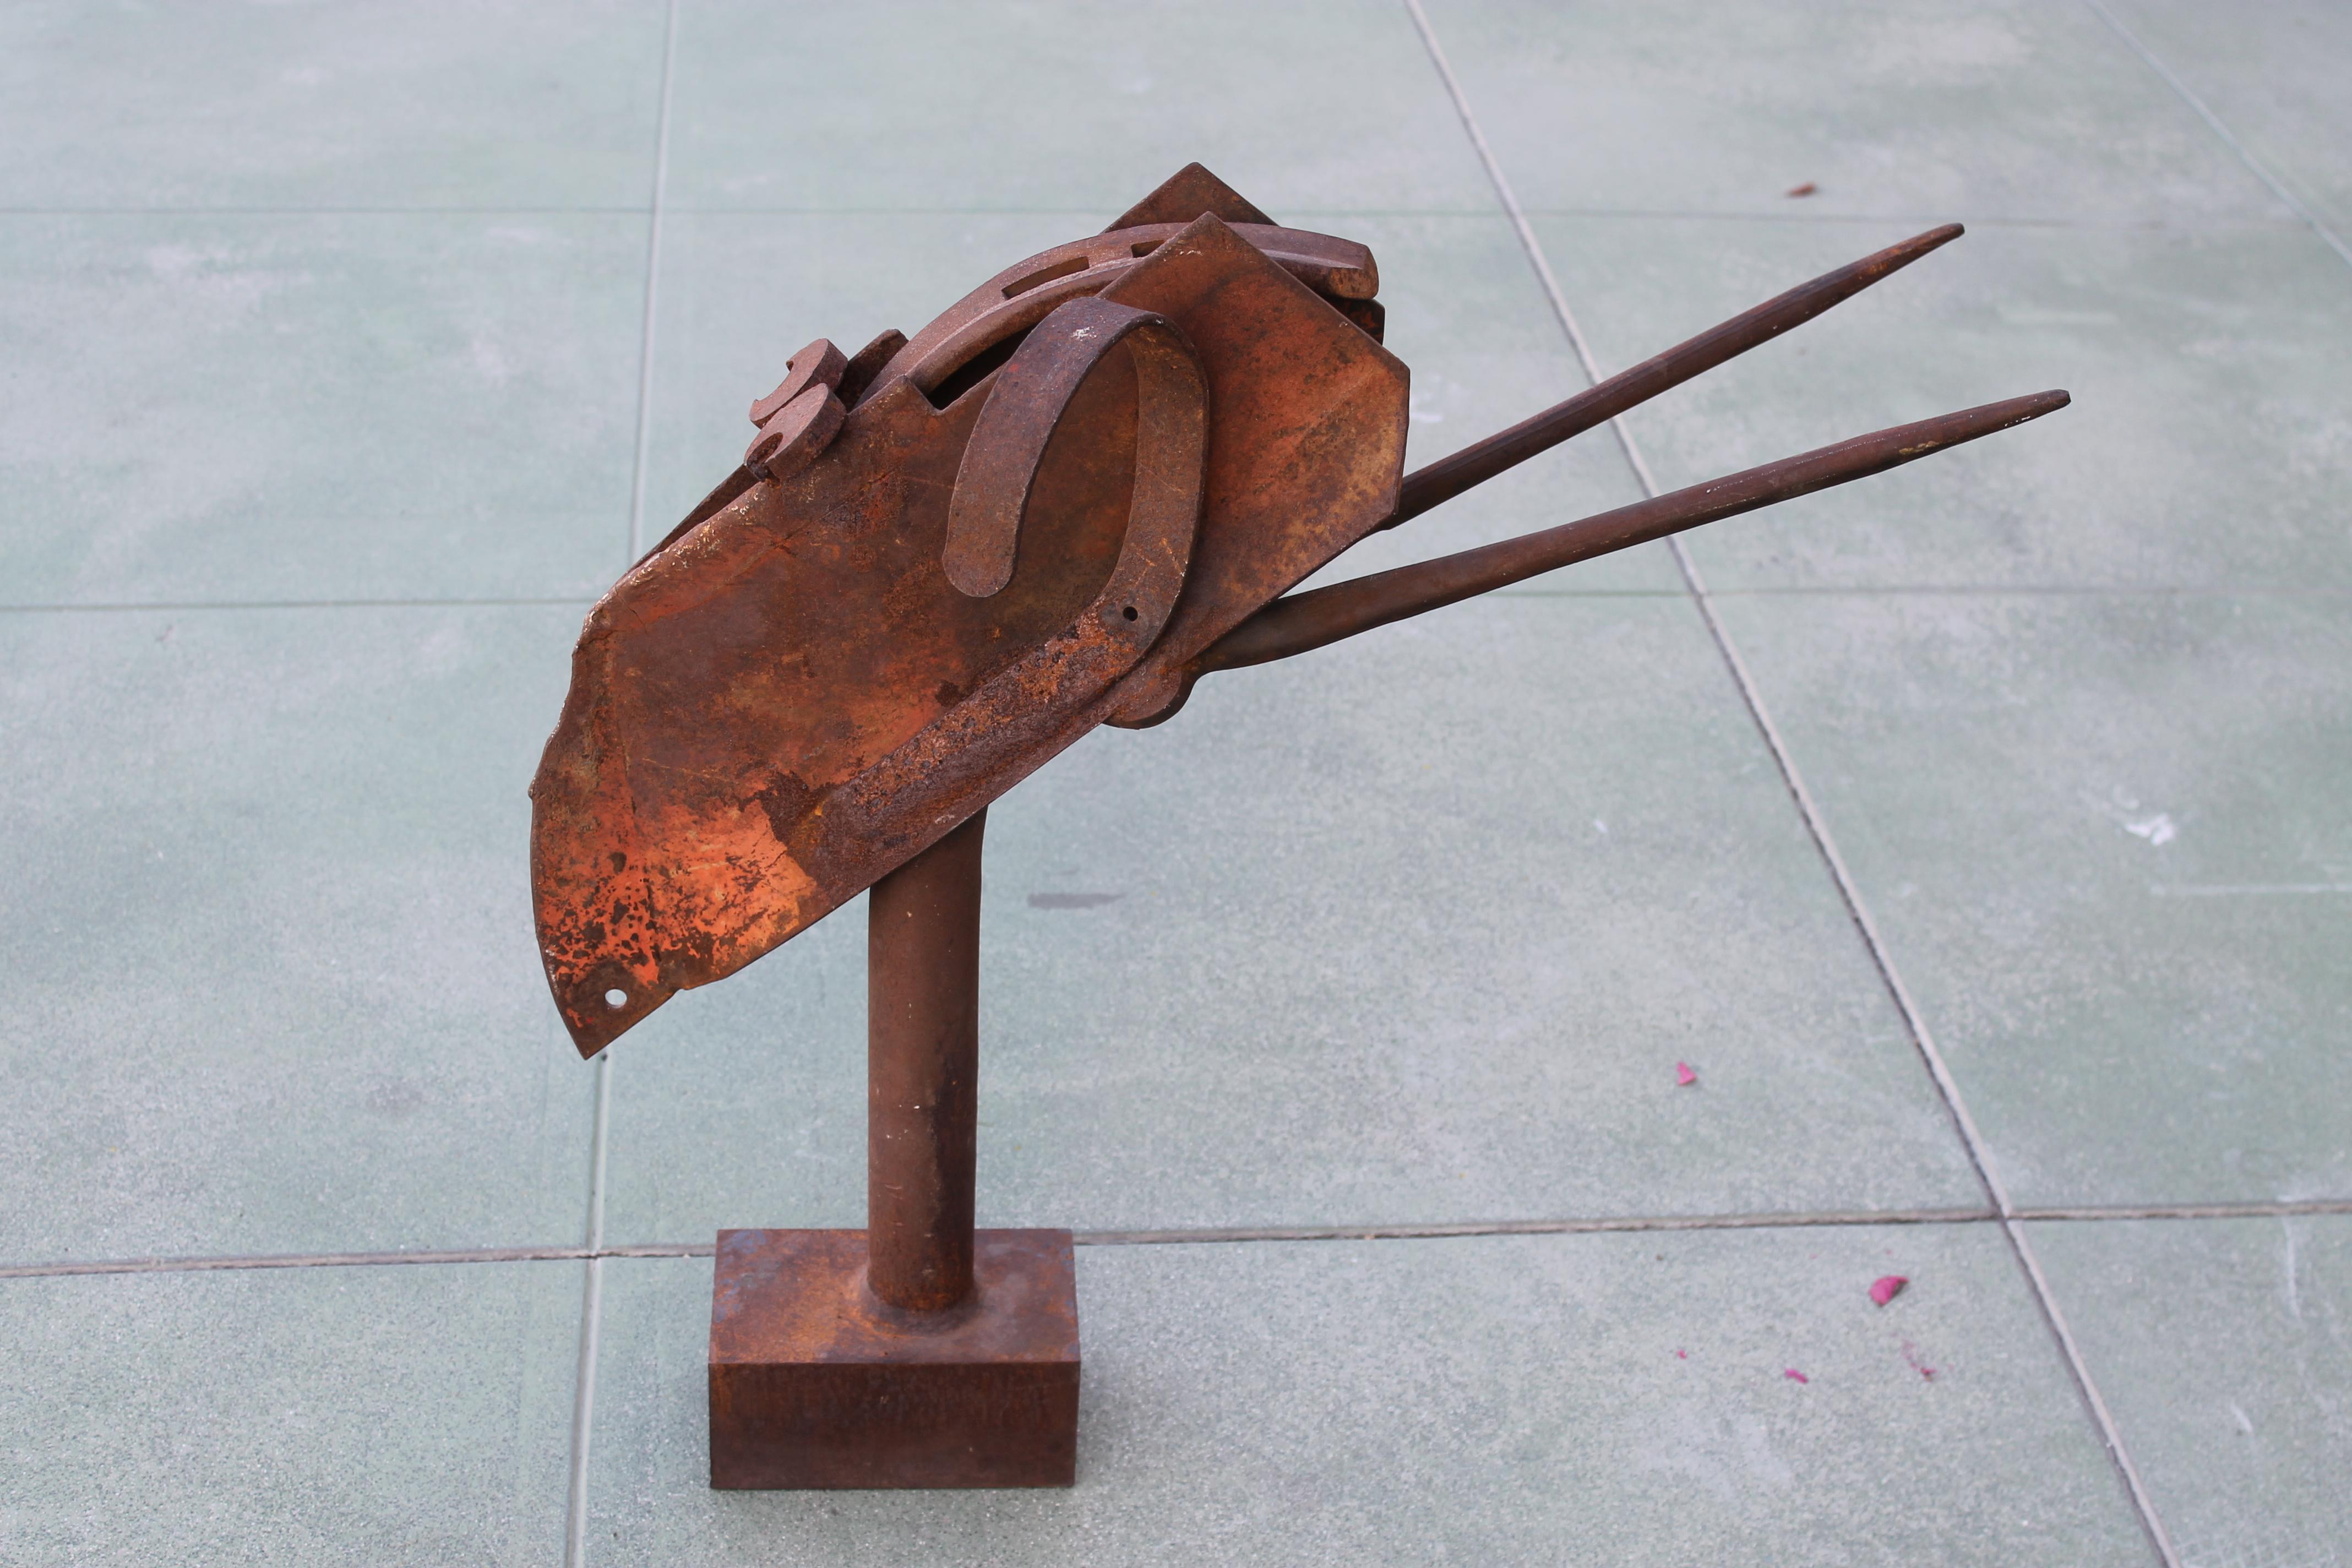 Sculpture d'acier en studio représentant un animal à l'aide d'objets trouvés. La sculpture mesure 26 pouces de large, 15 pouces de profondeur et 26 pouces de haut.